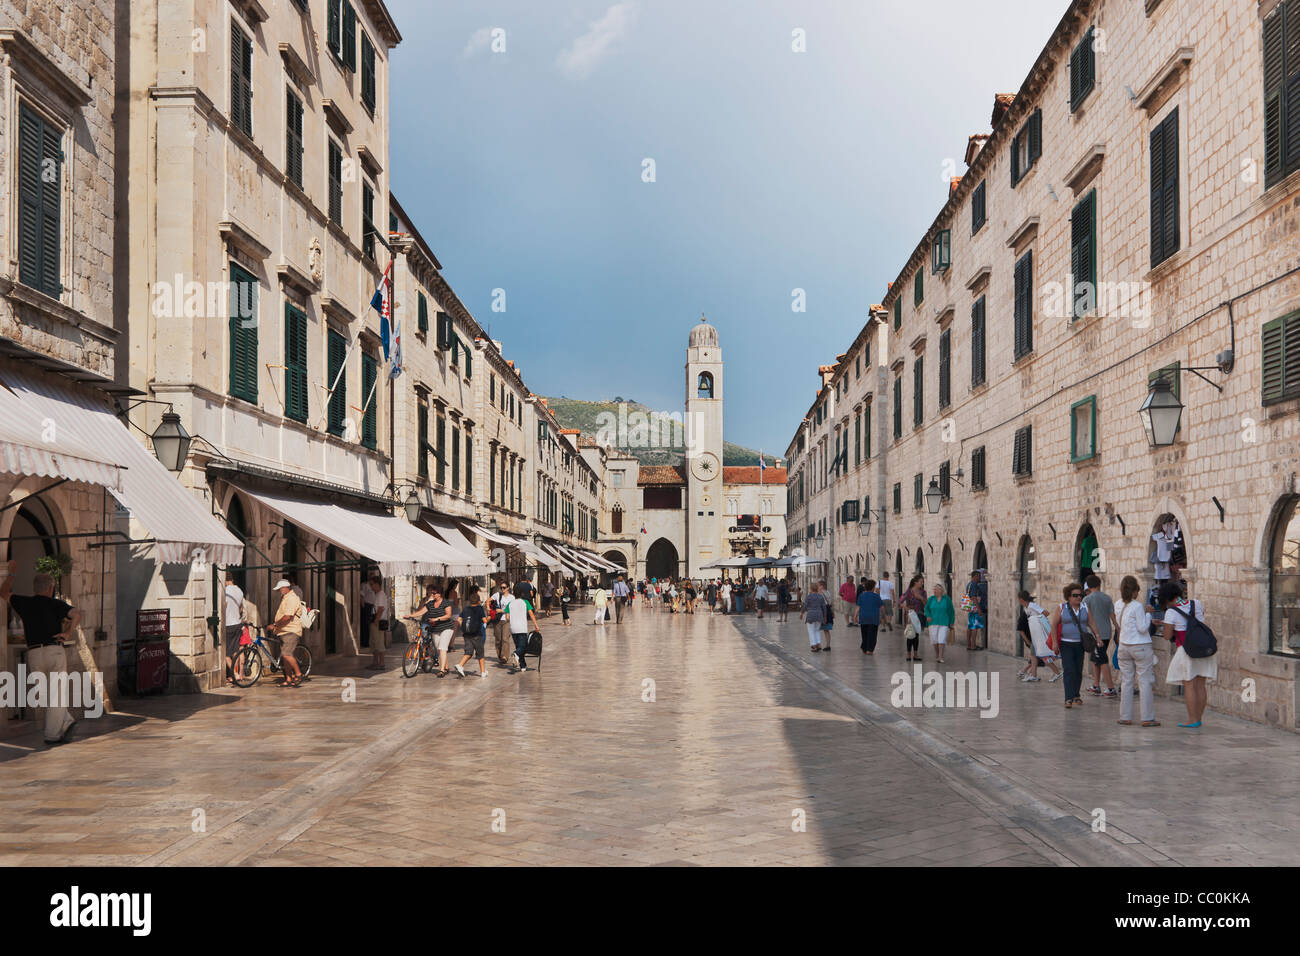 Vue sur la rue commerçante animée et la promenade Stradun, également appelé Placa, Dubrovnik, Dalmatie, Croatie, Europe Banque D'Images